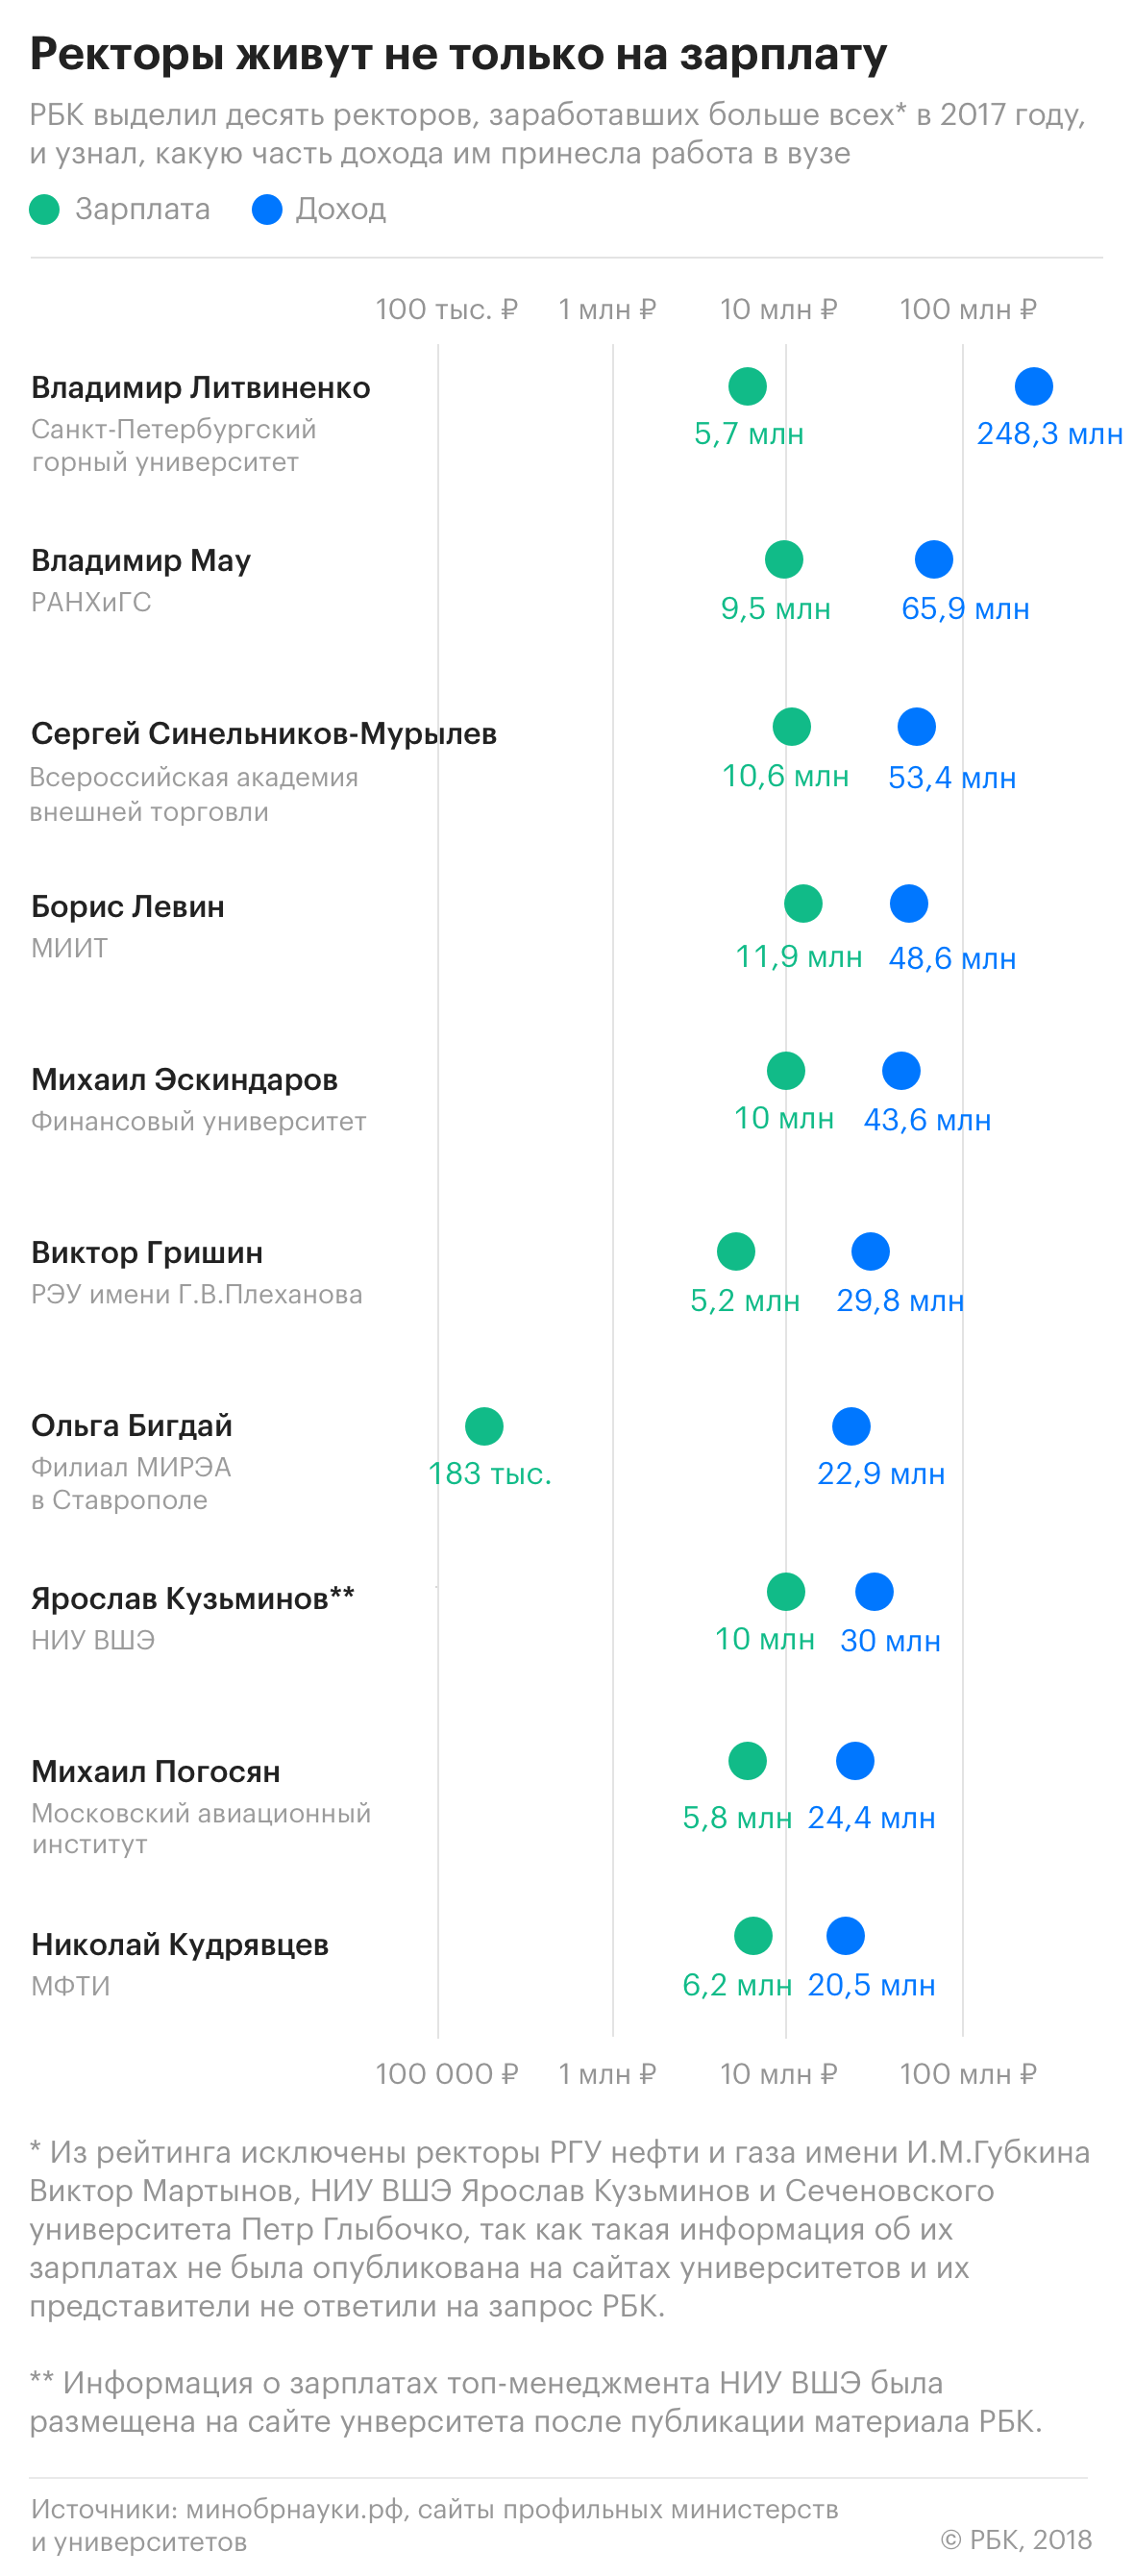 Как экс-глава штаба Путина трижды возглавил рейтинг богатейших ректоров